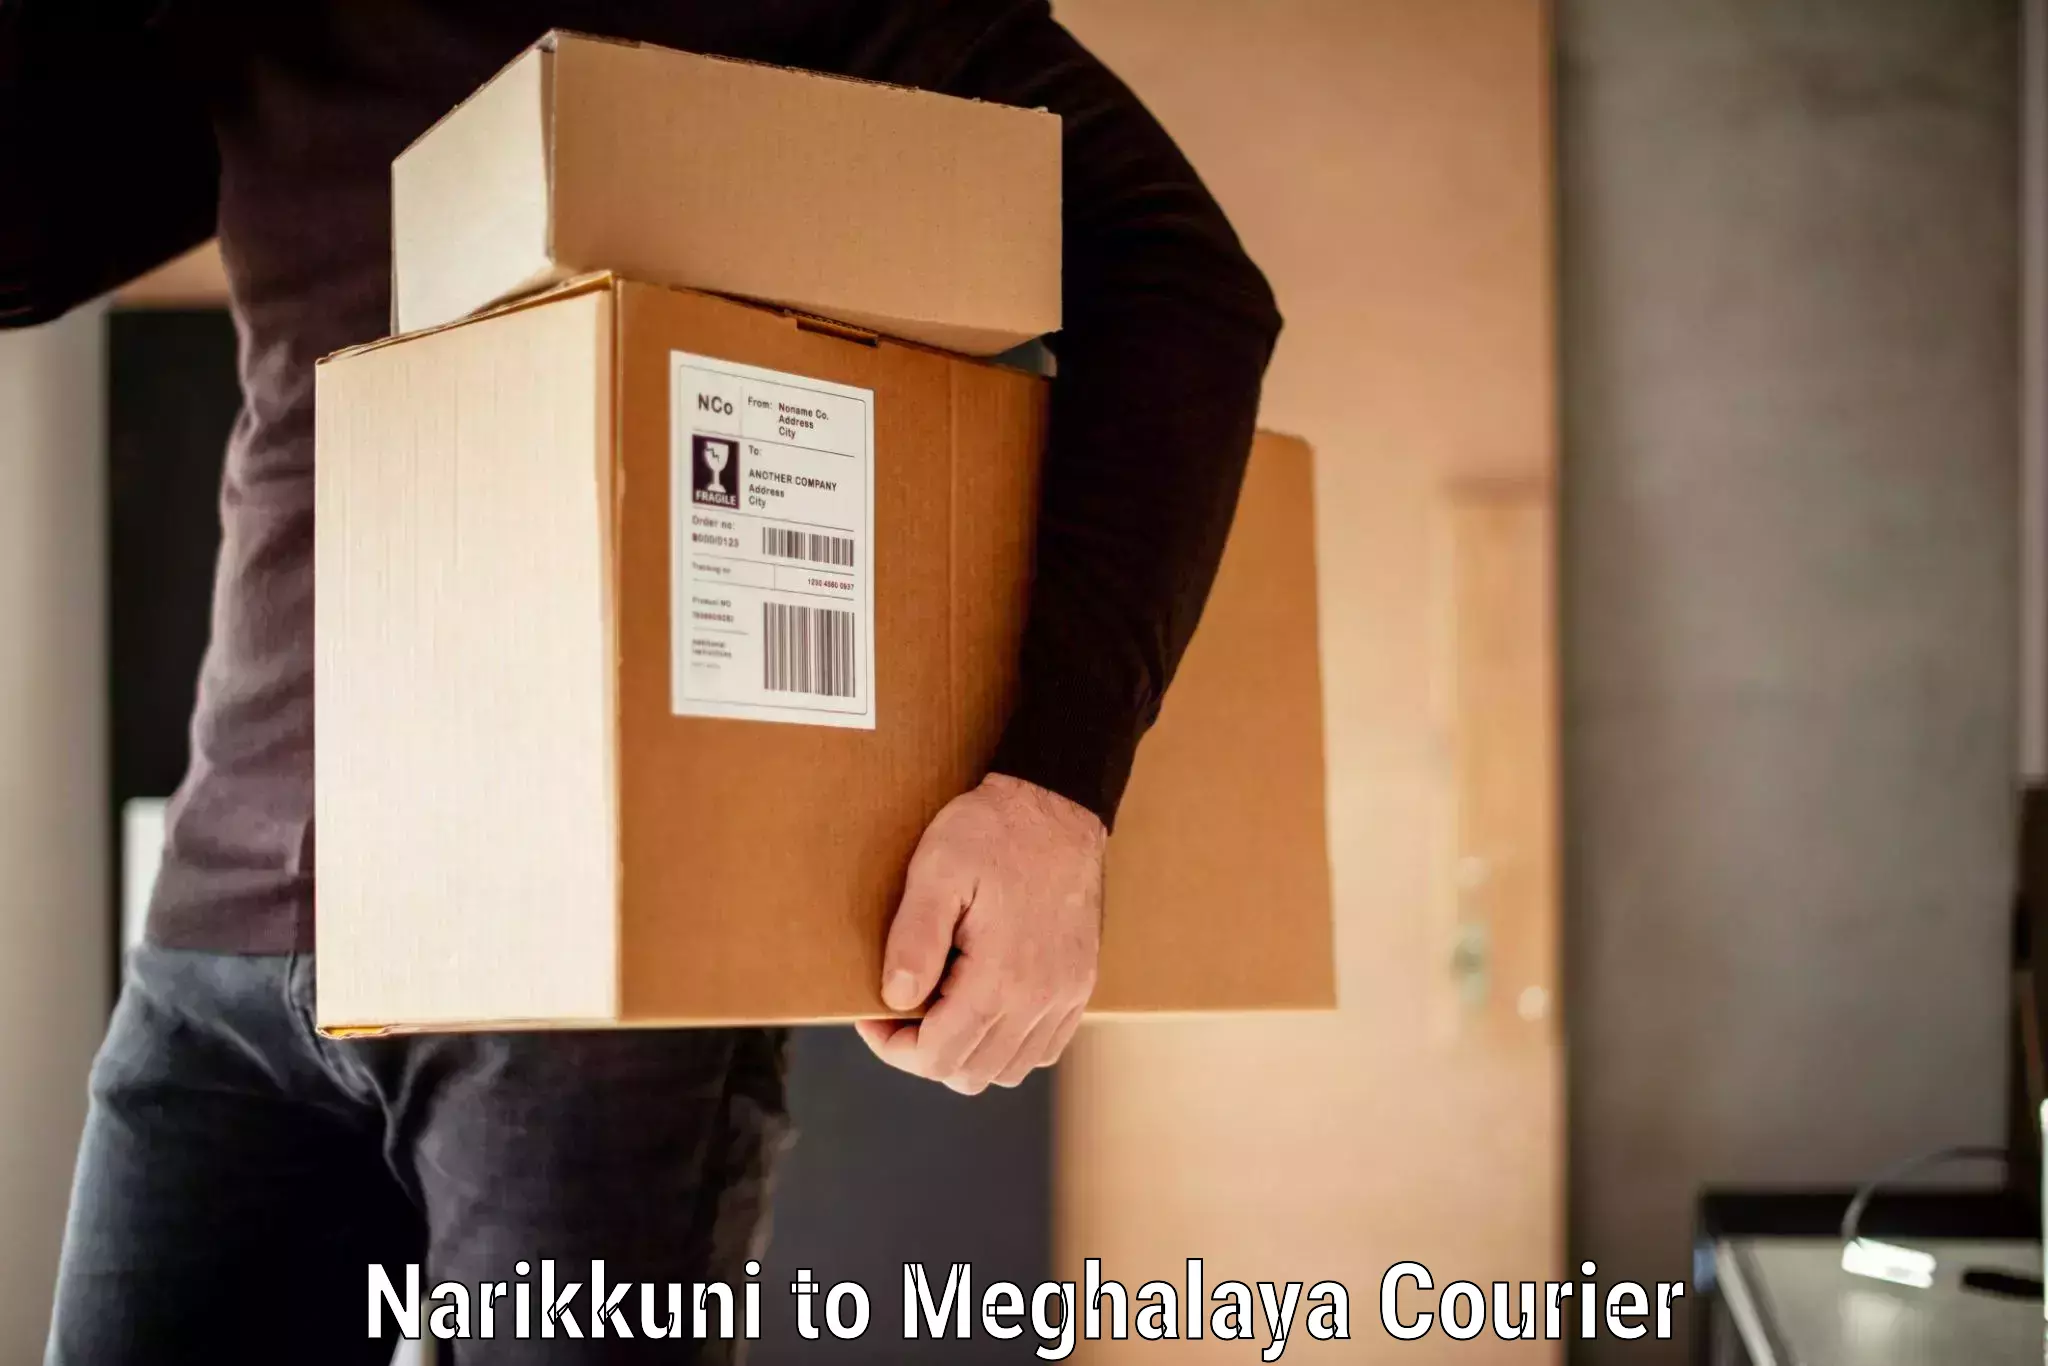 Luggage forwarding service Narikkuni to Meghalaya